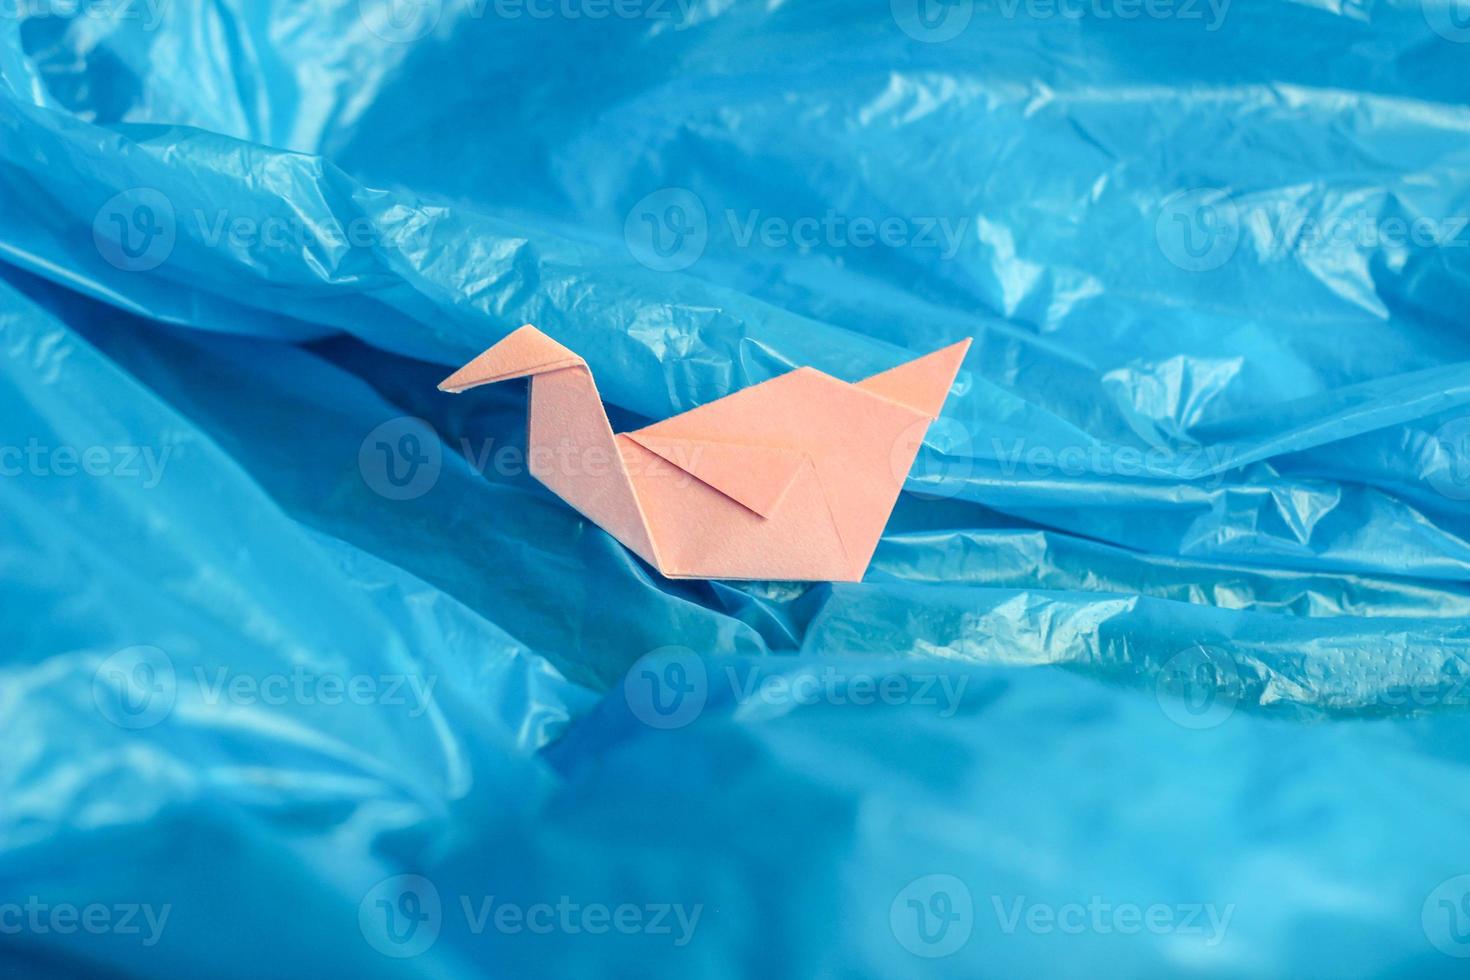 origami de pájaro de papel rosa entre una bolsa de plástico azul como si estuviera en olas de agua o cielo azul. foto conceptual